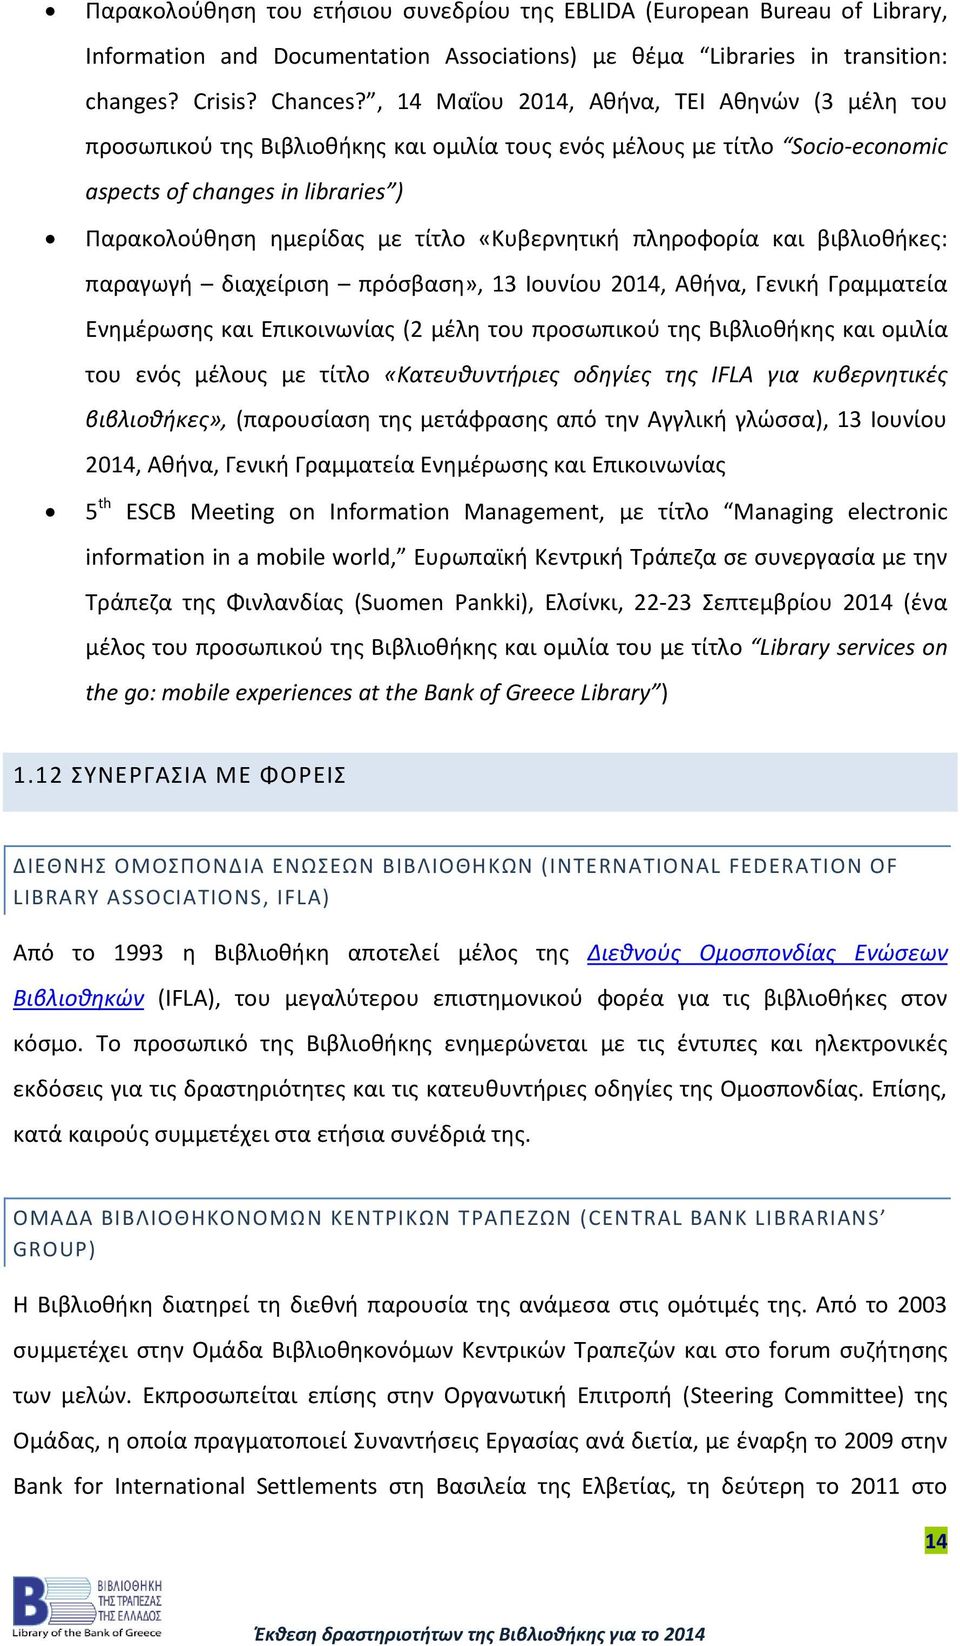 «Κυβερνητική πληροφορία και βιβλιοθήκες: παραγωγή διαχείριση πρόσβαση», 13 Ιουνίου 2014, Αθήνα, Γενική Γραμματεία Ενημέρωσης και Επικοινωνίας (2 μέλη του προσωπικού της Βιβλιοθήκης και ομιλία του